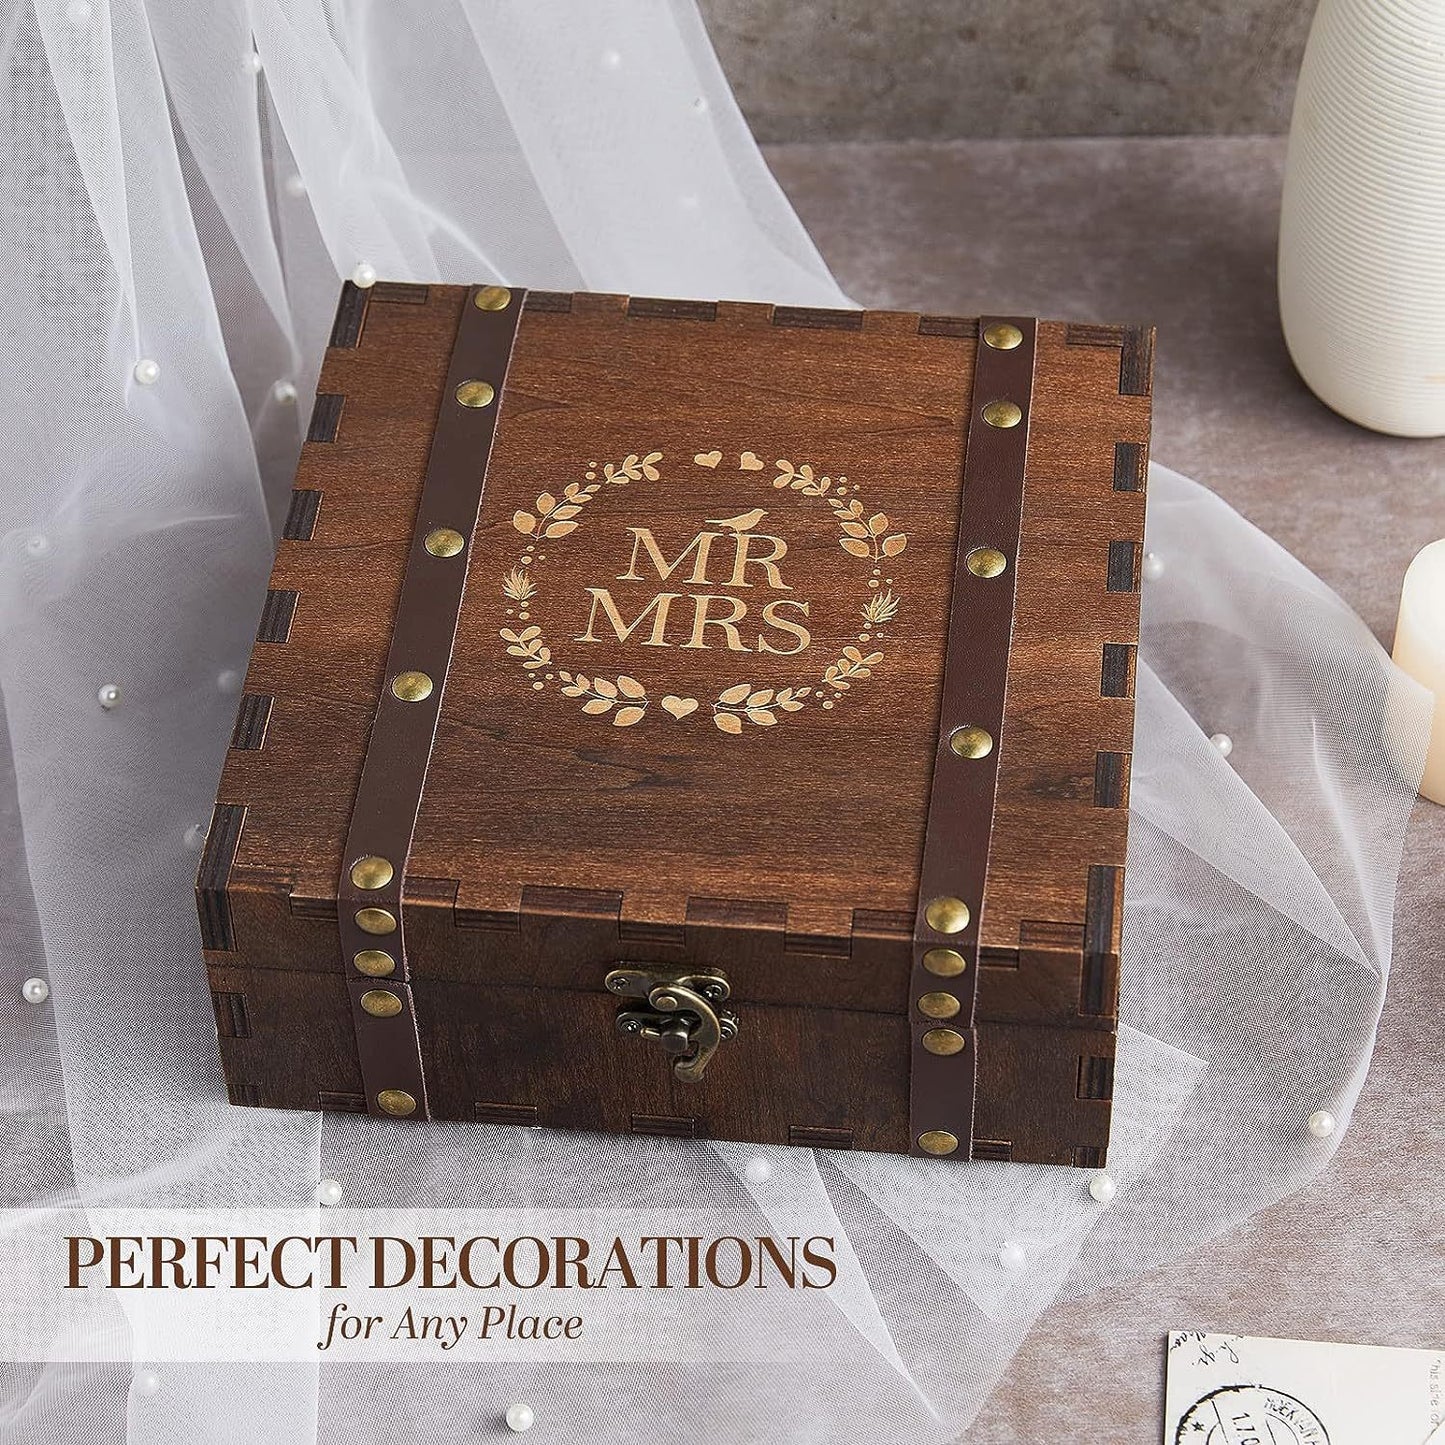 お土産メモリーボックス、カバー付き結婚式のお土産ボックス、7.87*7.87*2.95インチ、素朴な装飾の木製収納ボックス、結婚記念日やカップルのギフトに最適